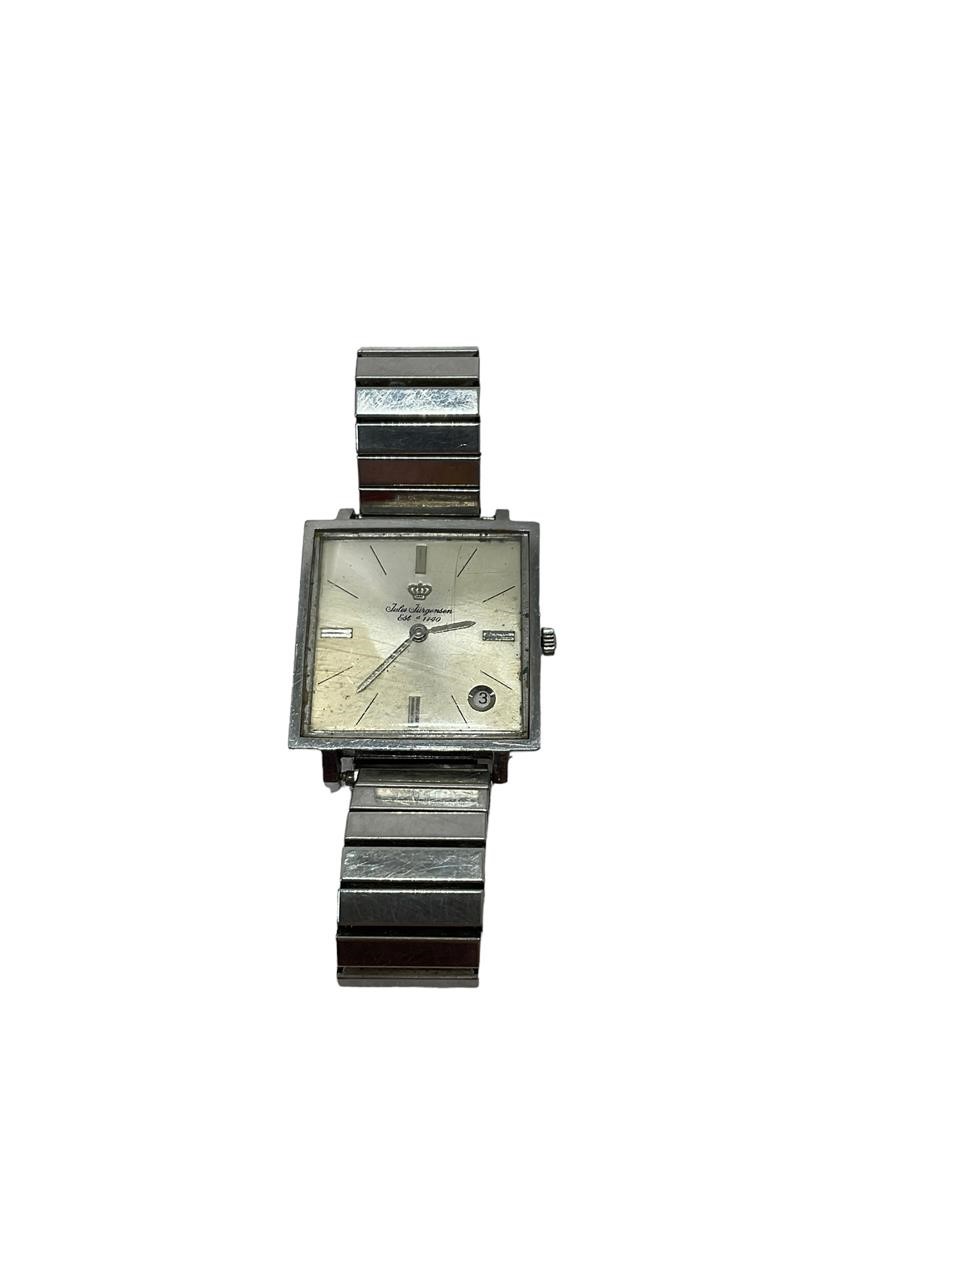 Vintage Jules Jurgensen Men's Watch